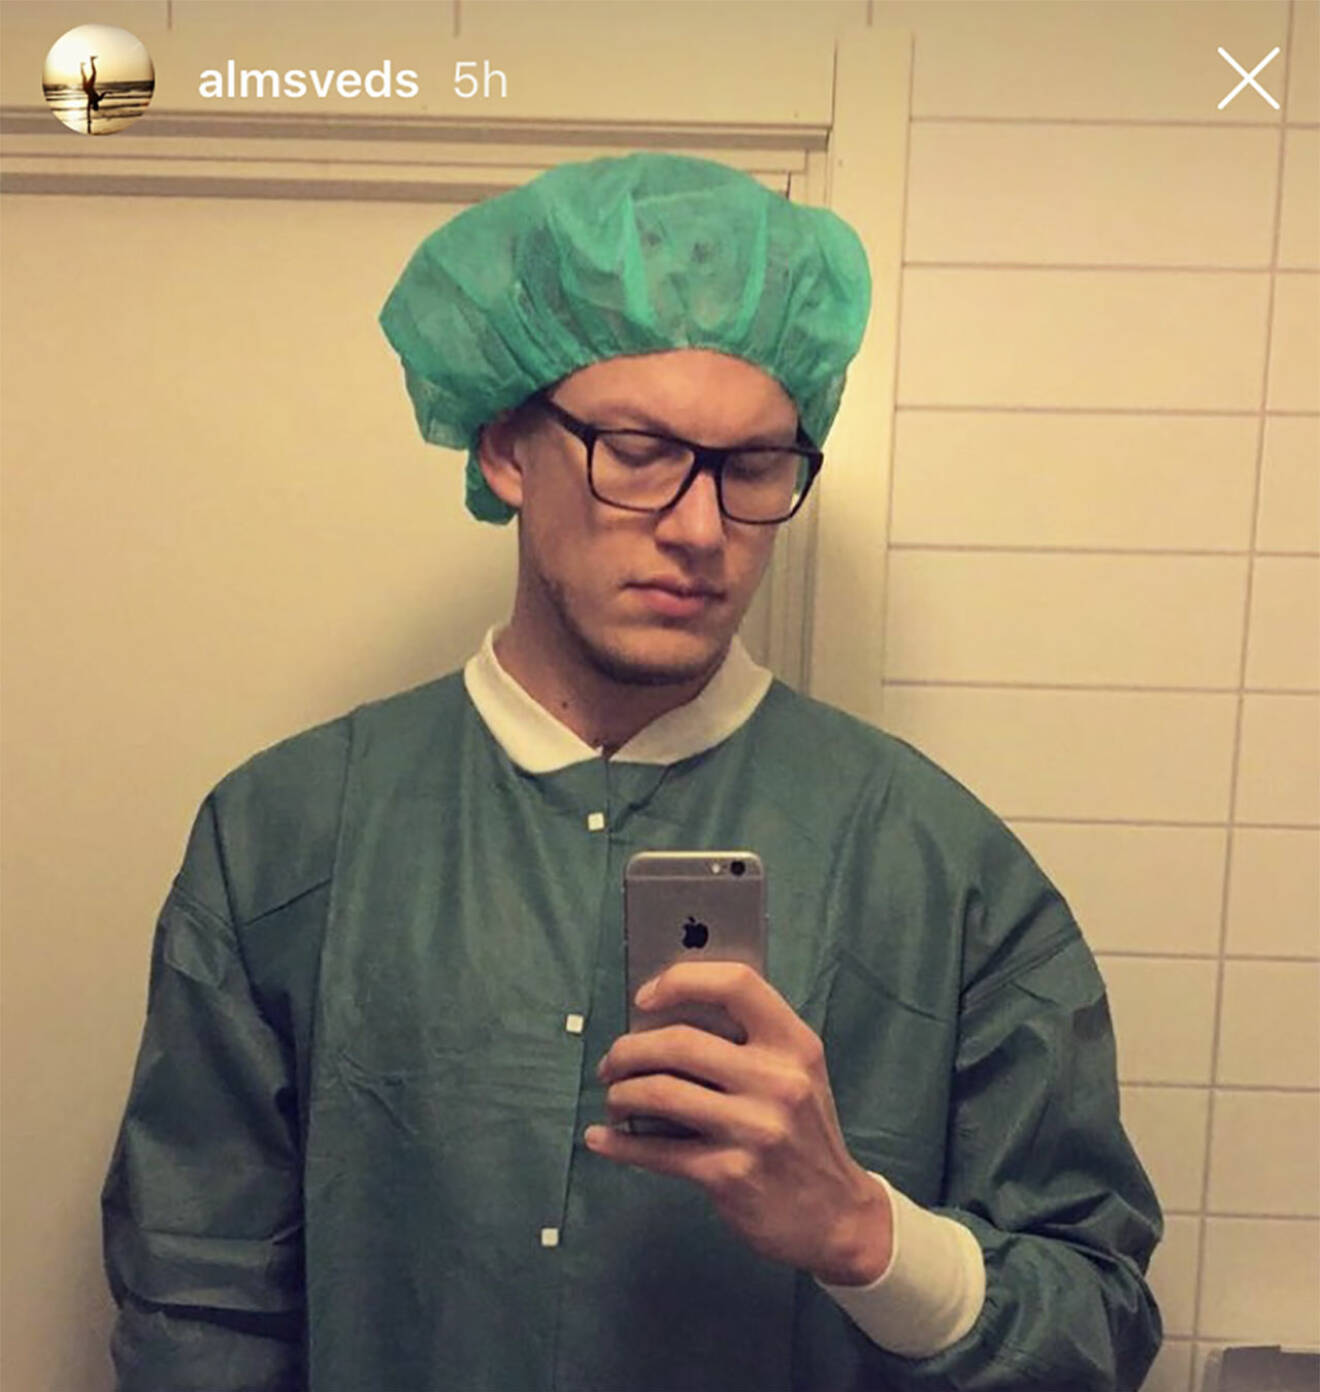 Bachelor-Felix Almsved på sjukhuset.